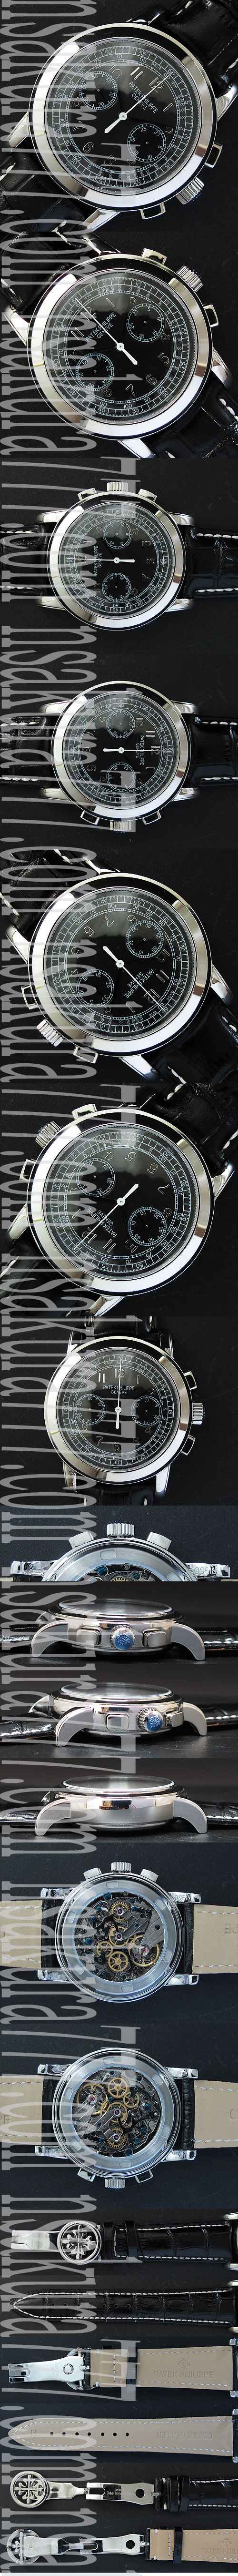 パテック フィリップコピー時計： グランド・コンプリケーション, Asain 21600振動ムーブ